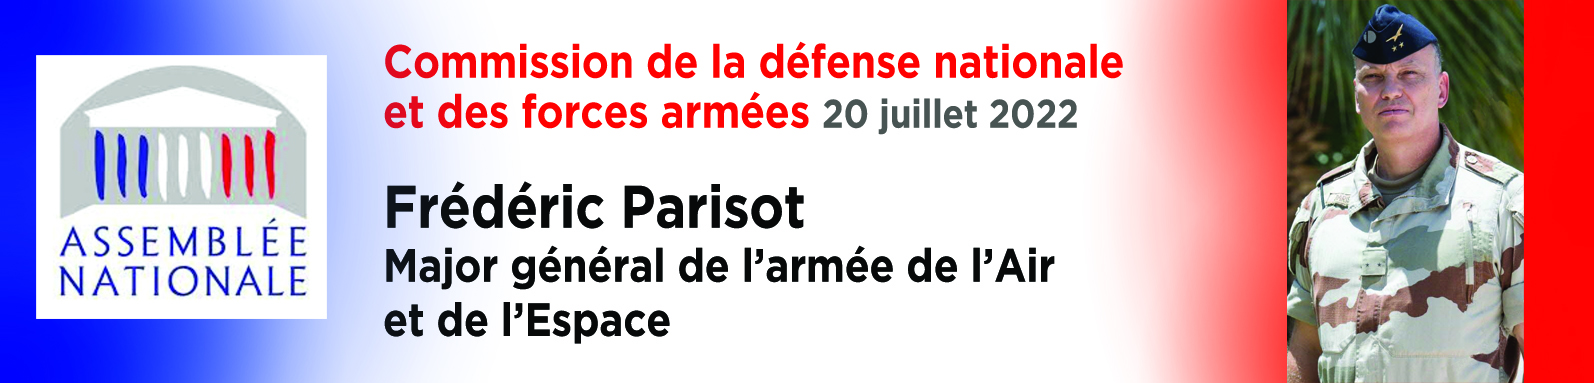 bandeau-intervention-parisot-assemblee-nationale-20072022